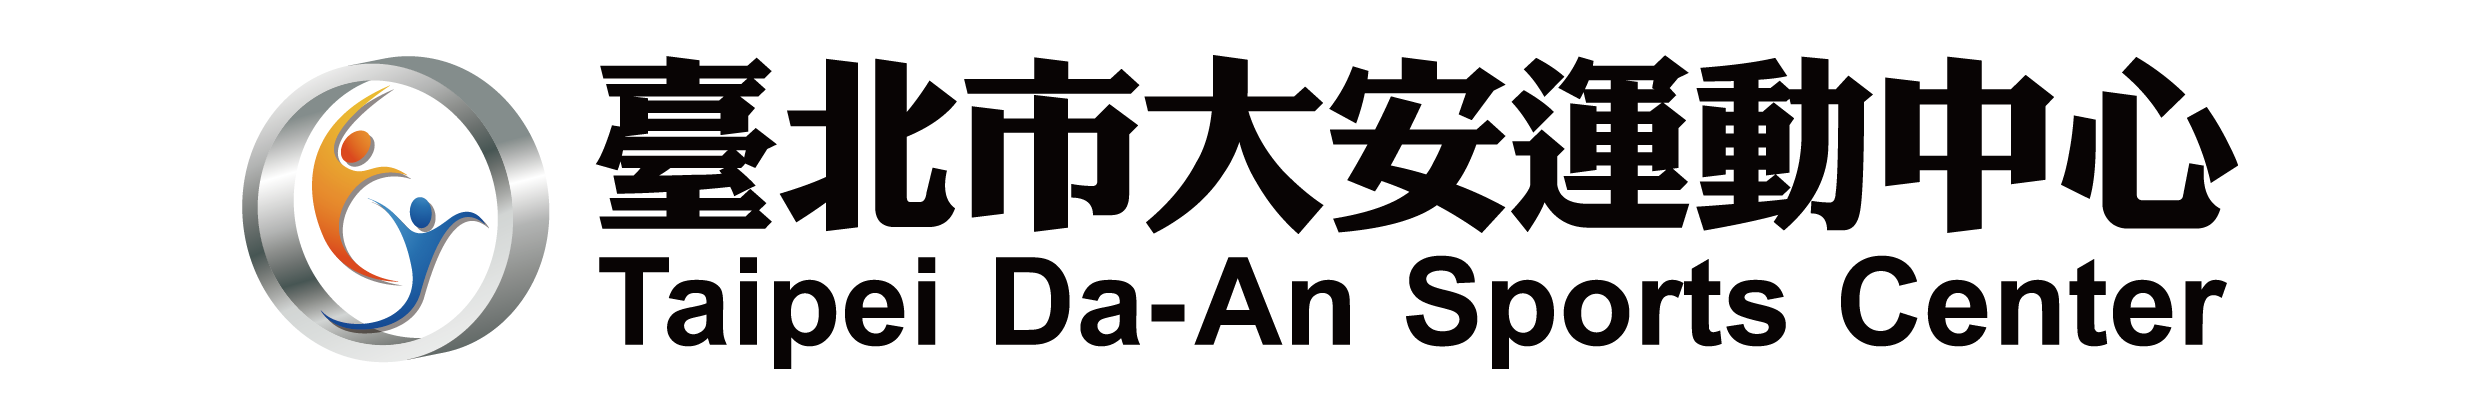 臺北市大安運動中心官方Logo